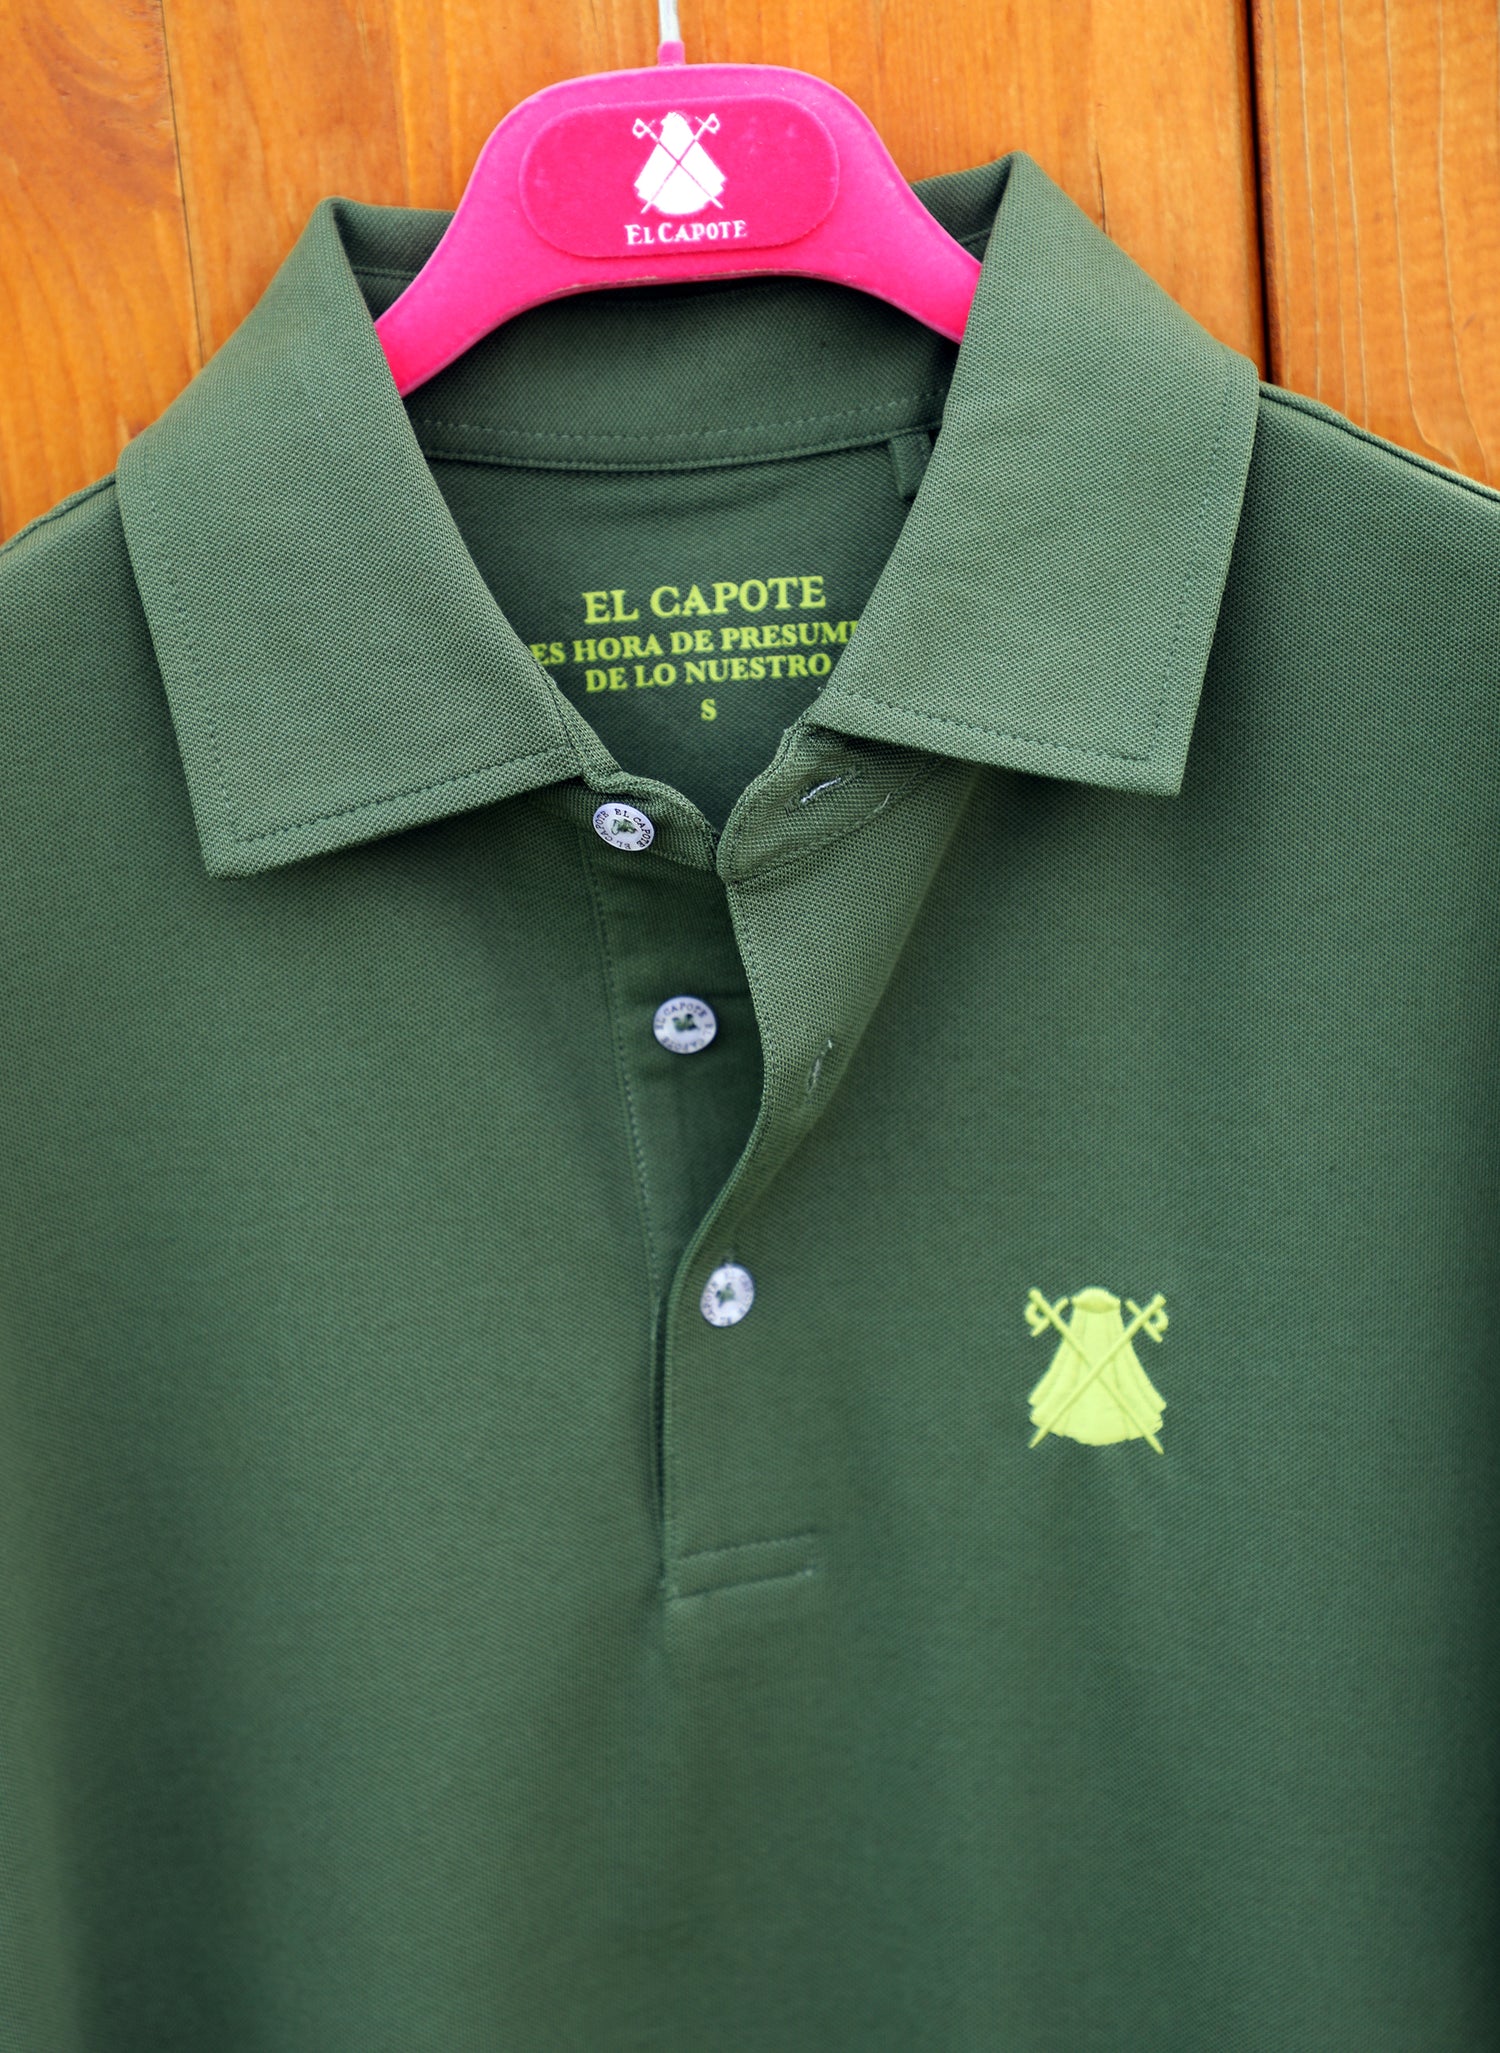 Herren-Poloshirt aus technischem Stoff in schlichtem Grün